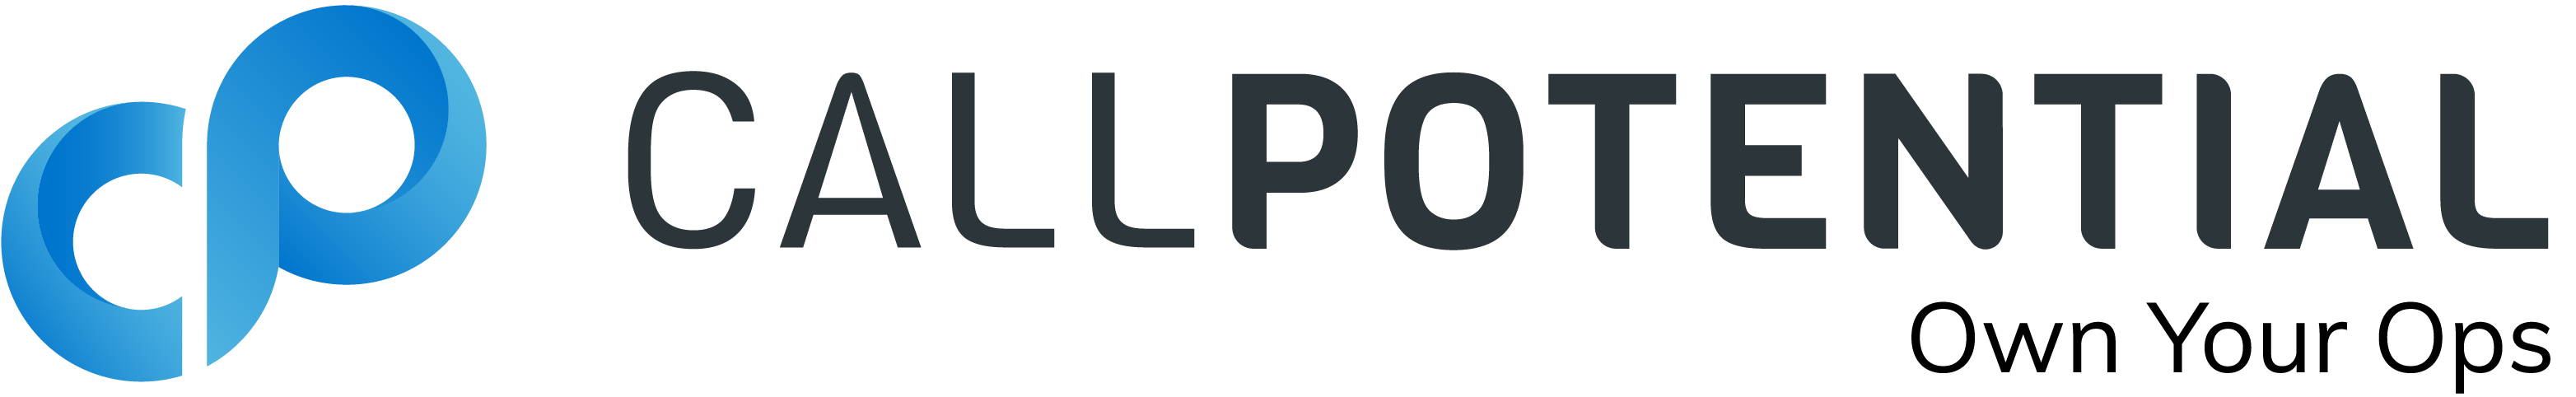 CP_Logo_Tagline_FullColor-1